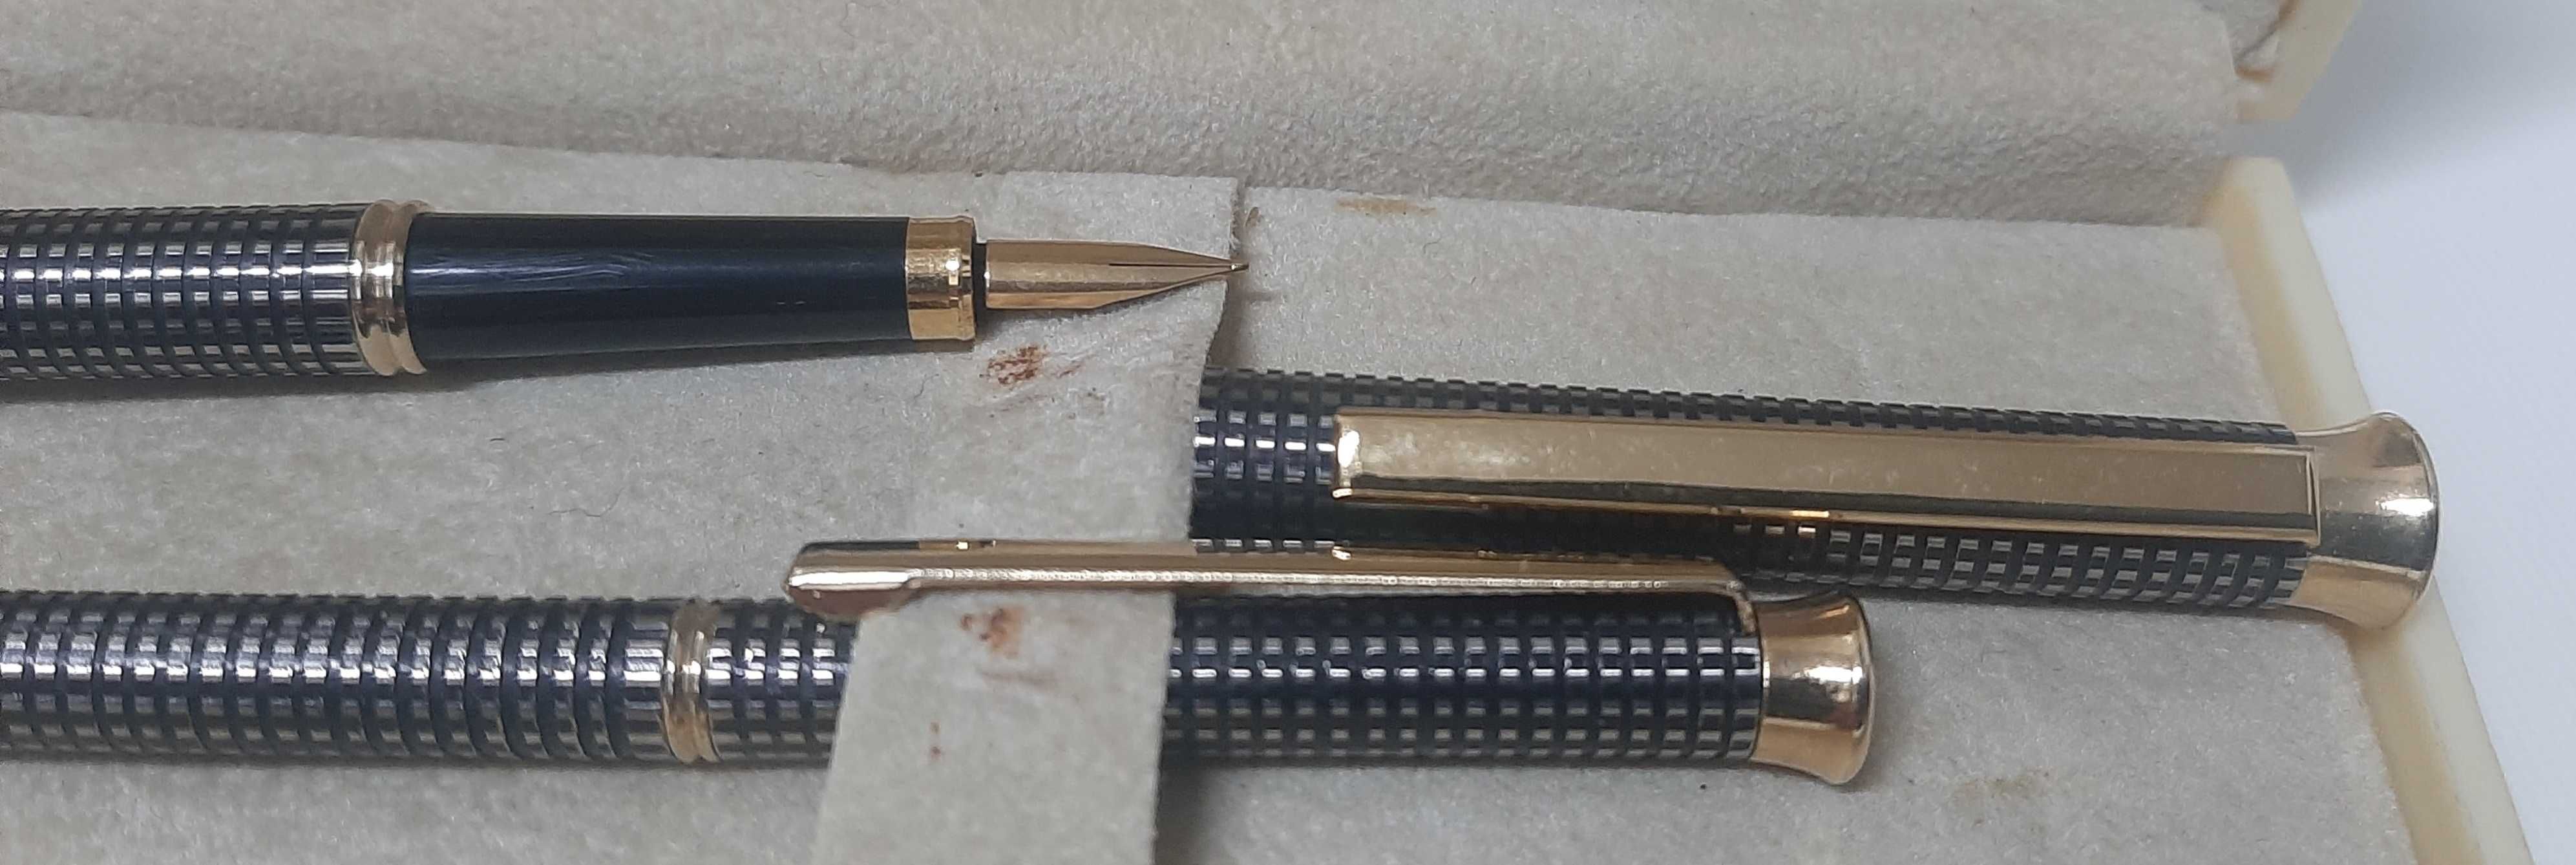 Conjunto de caneta de aparo e caneta Crest